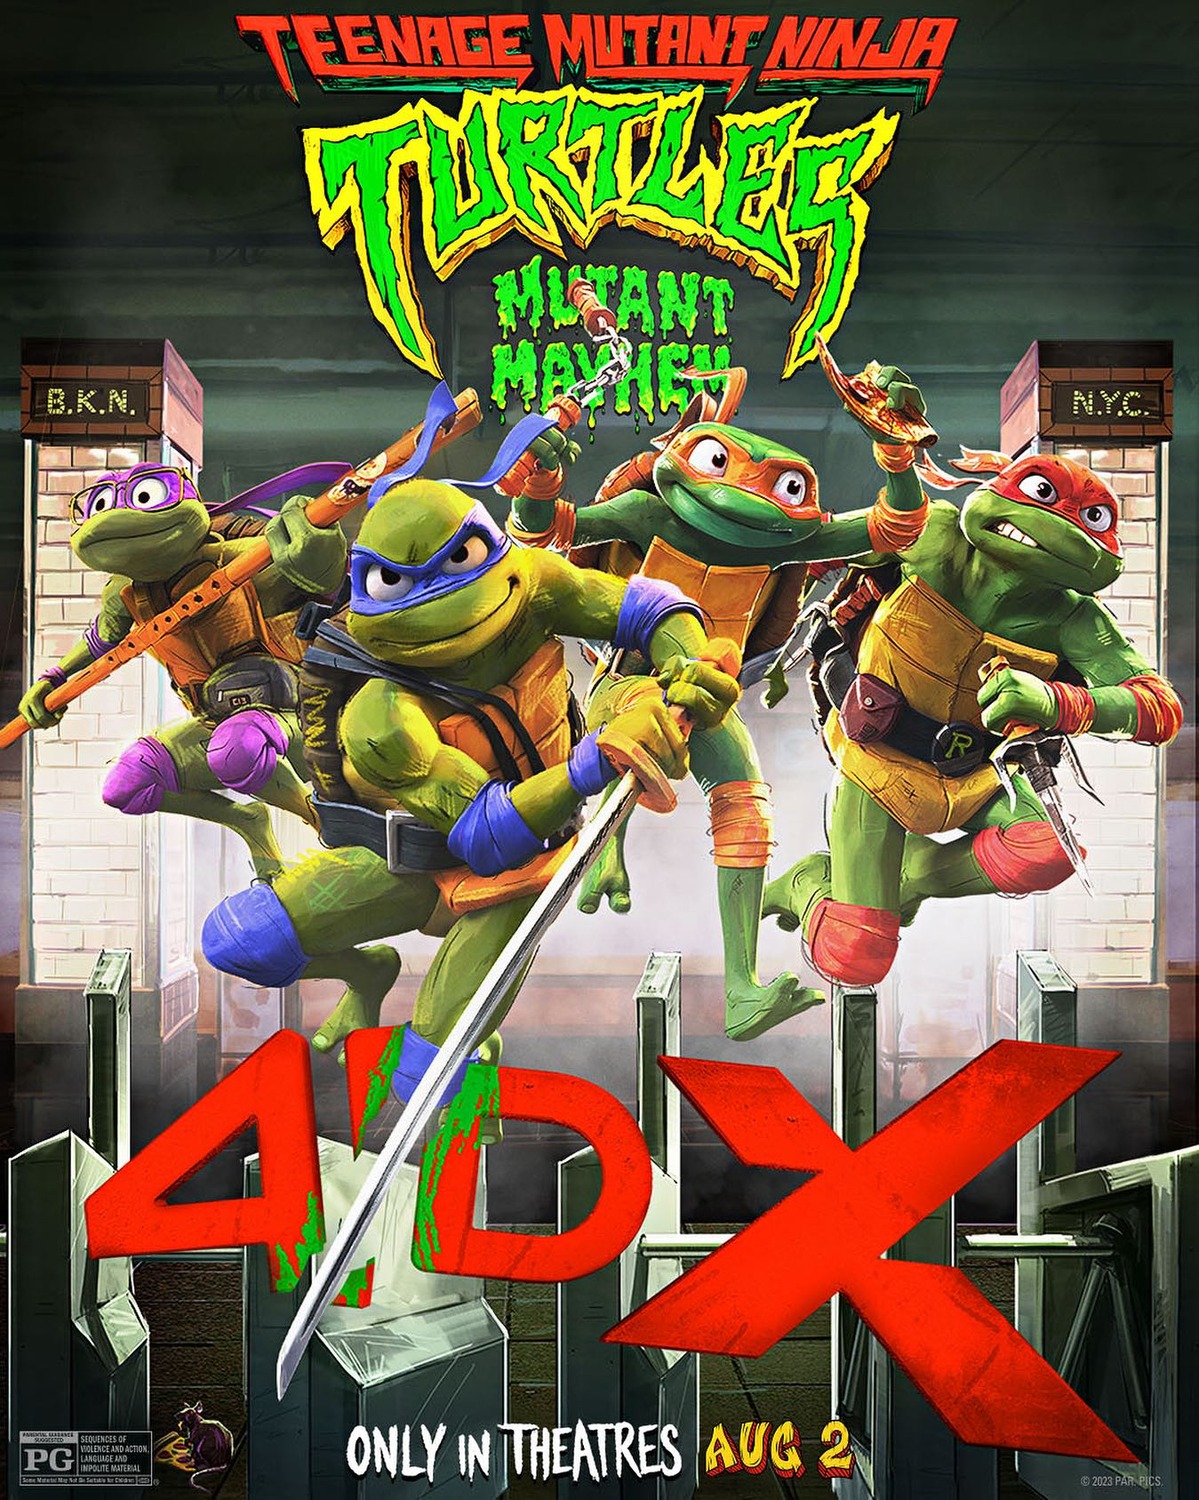 Extra Large Movie Poster Image for Teenage Mutant Ninja Turtles: Mutant Mayhem (#39 of 48)